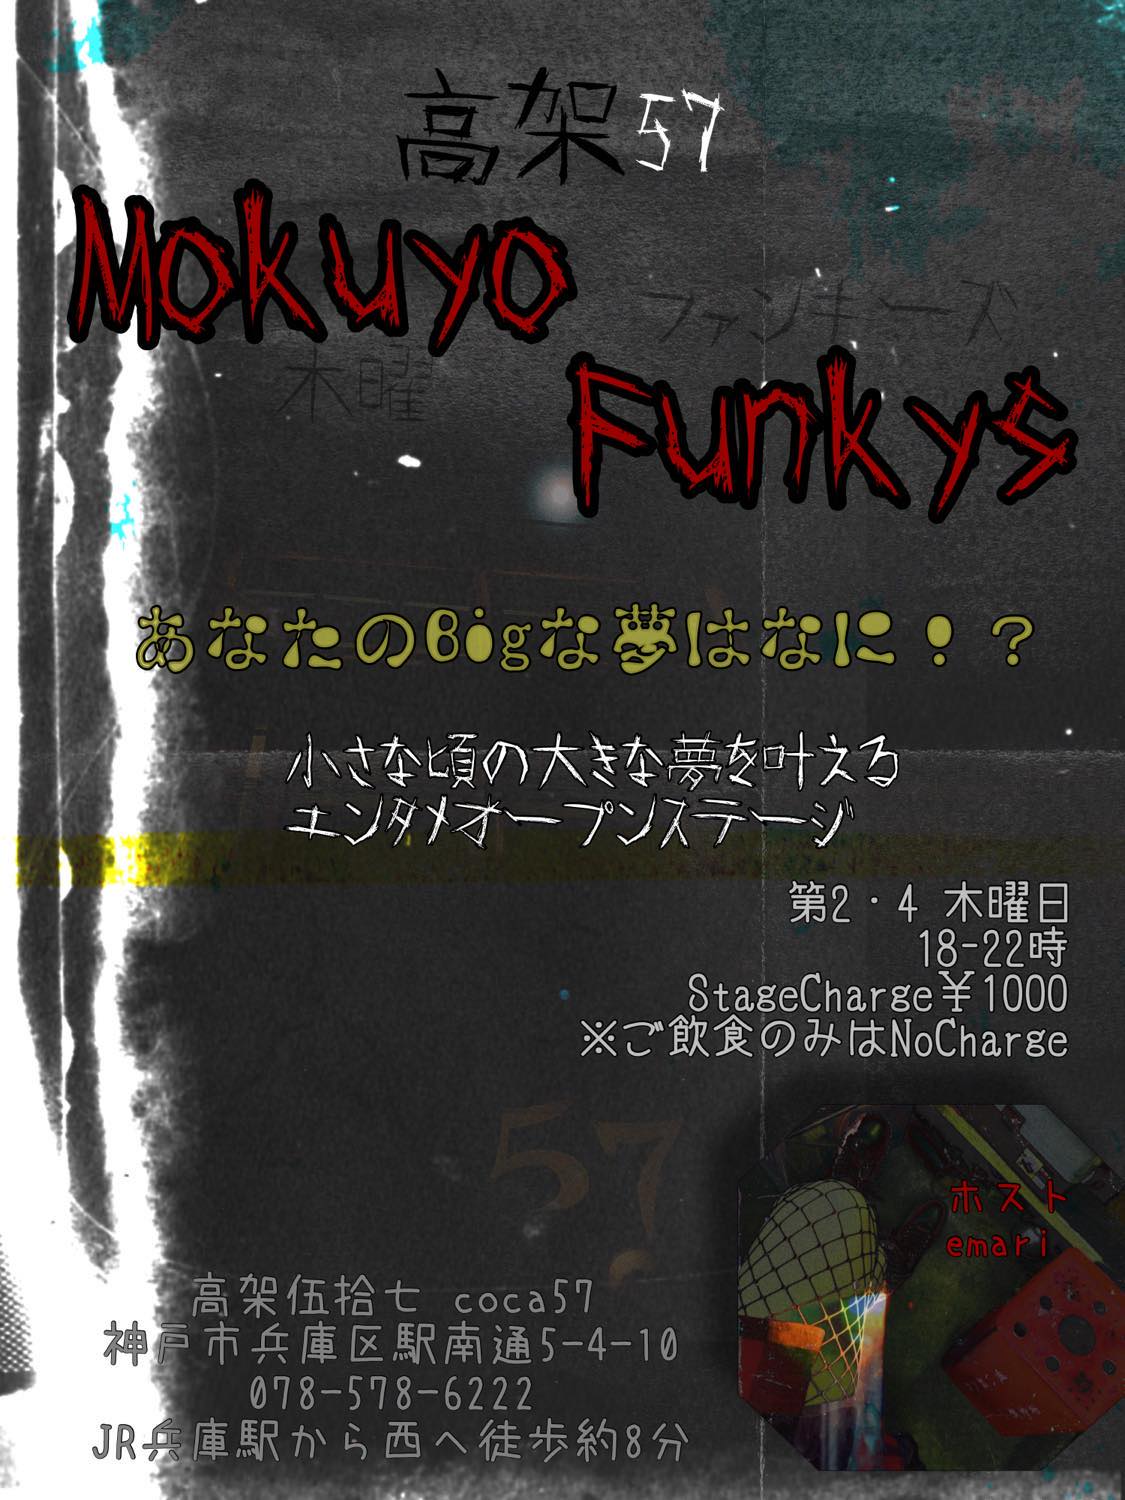 MOKUYO FUNKYS 18時開場